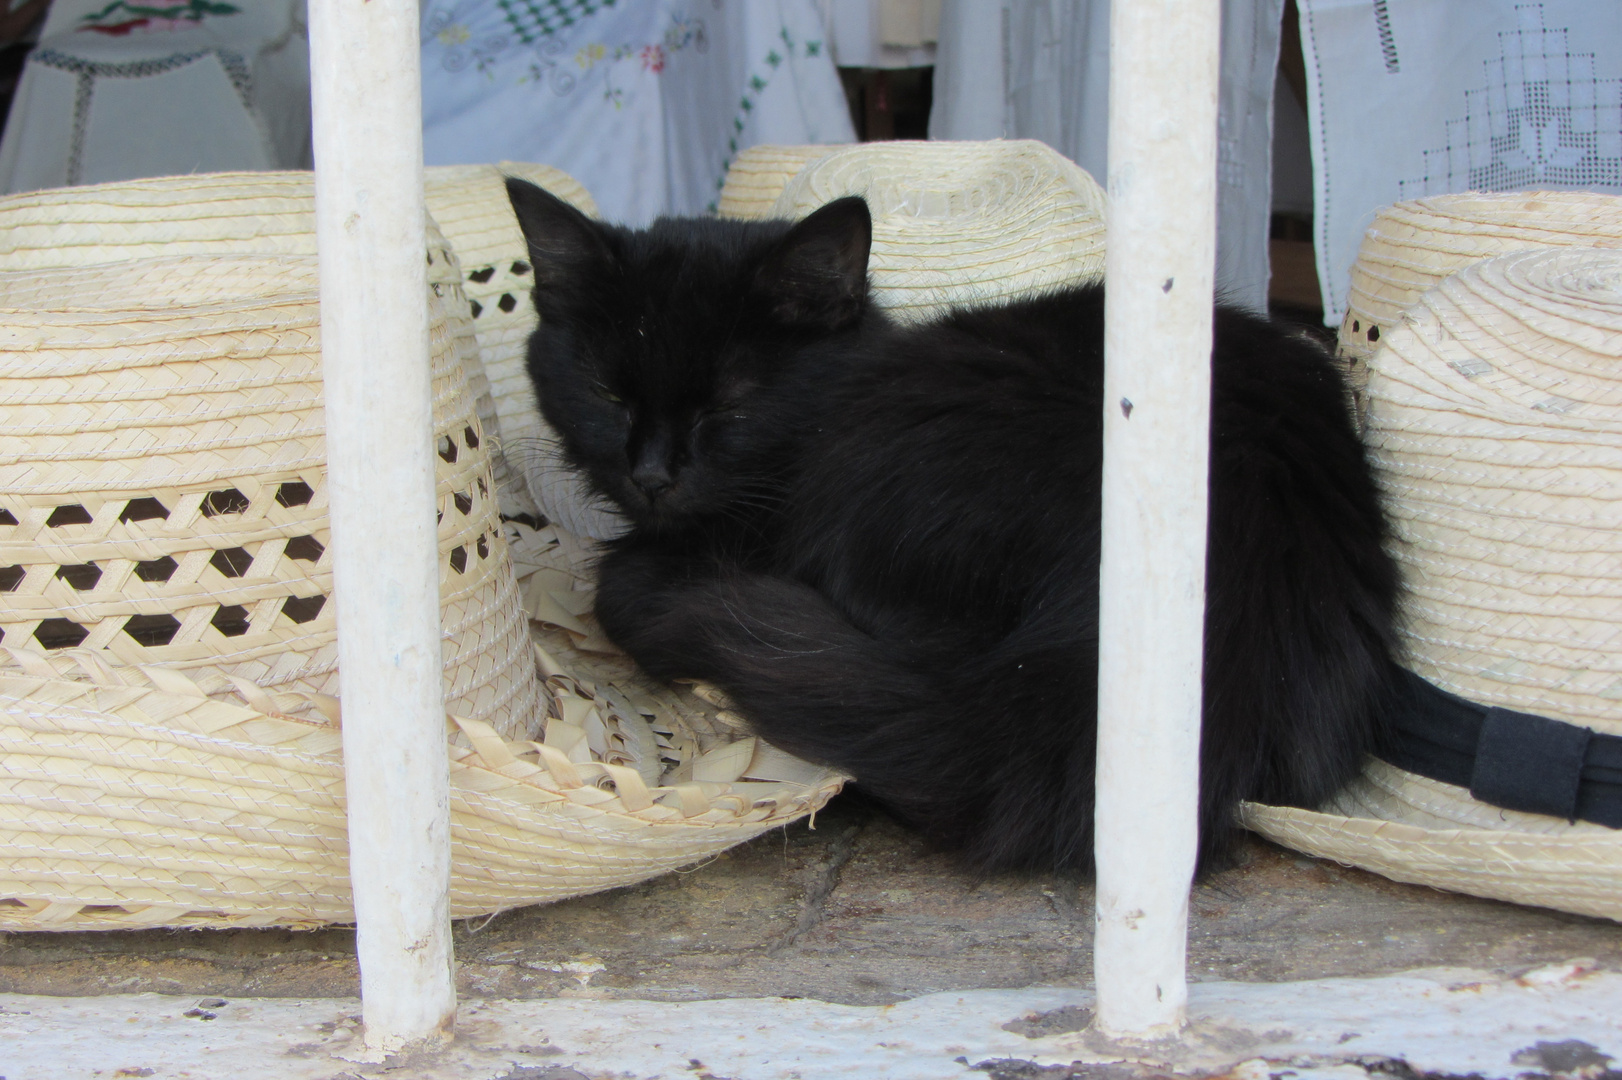 Katze im "Schaufenster" eines Souvenirladens in Trinidad, Cuba